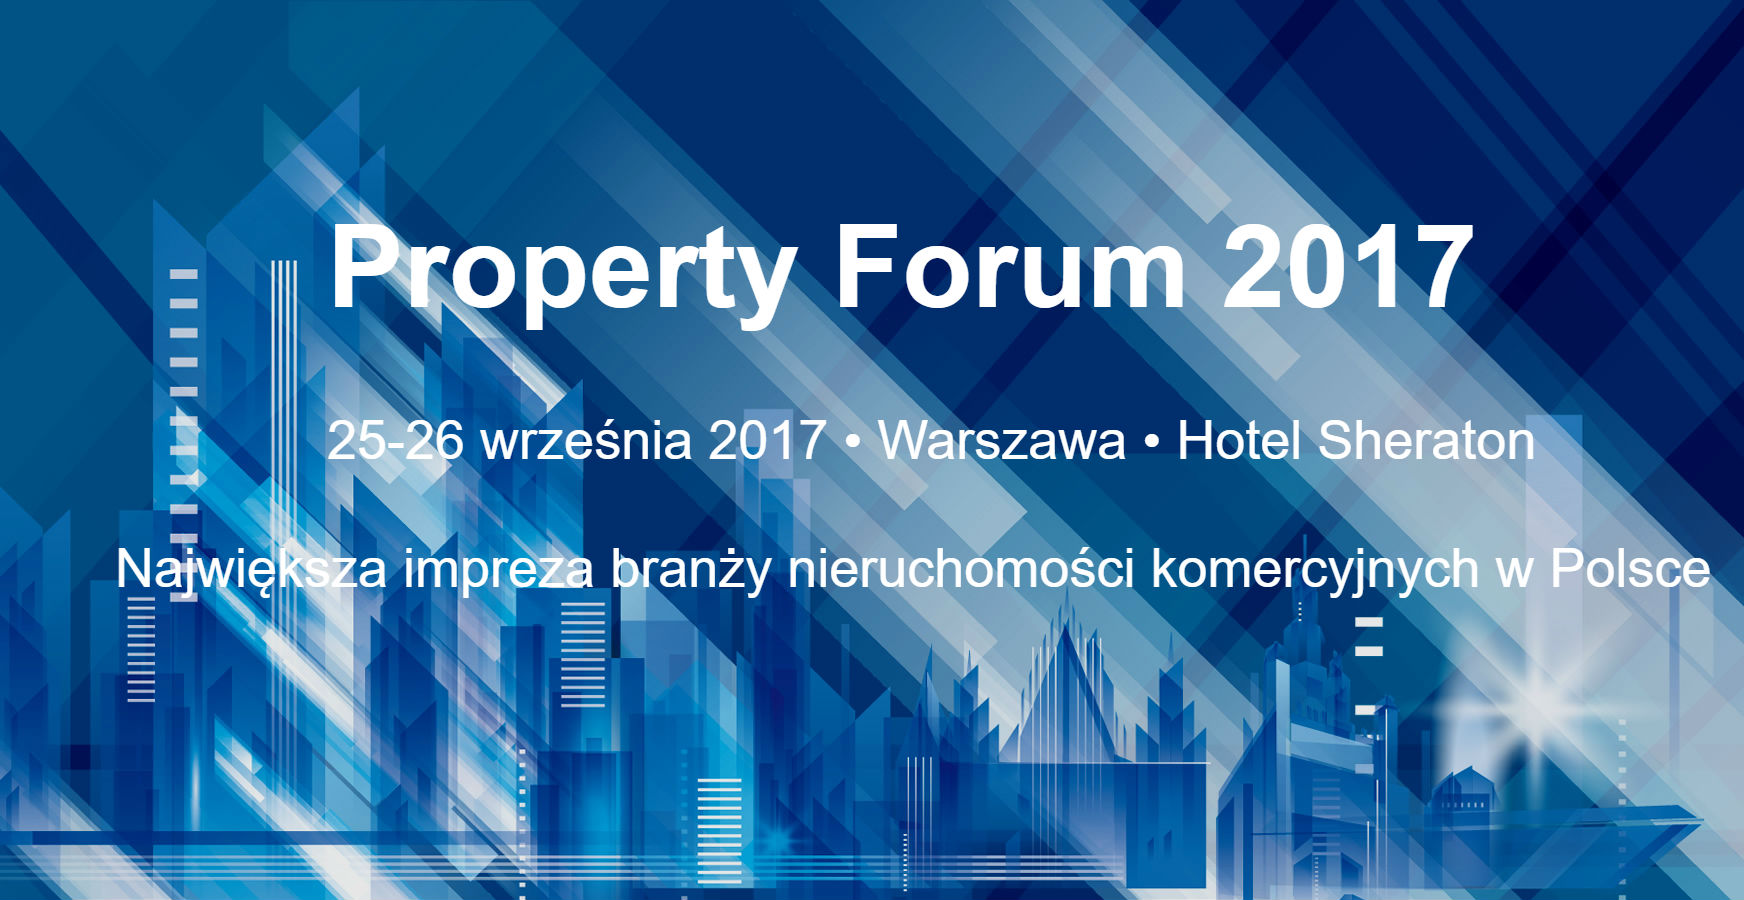 Property Forum 2017, TPA partnerem wydarzenia